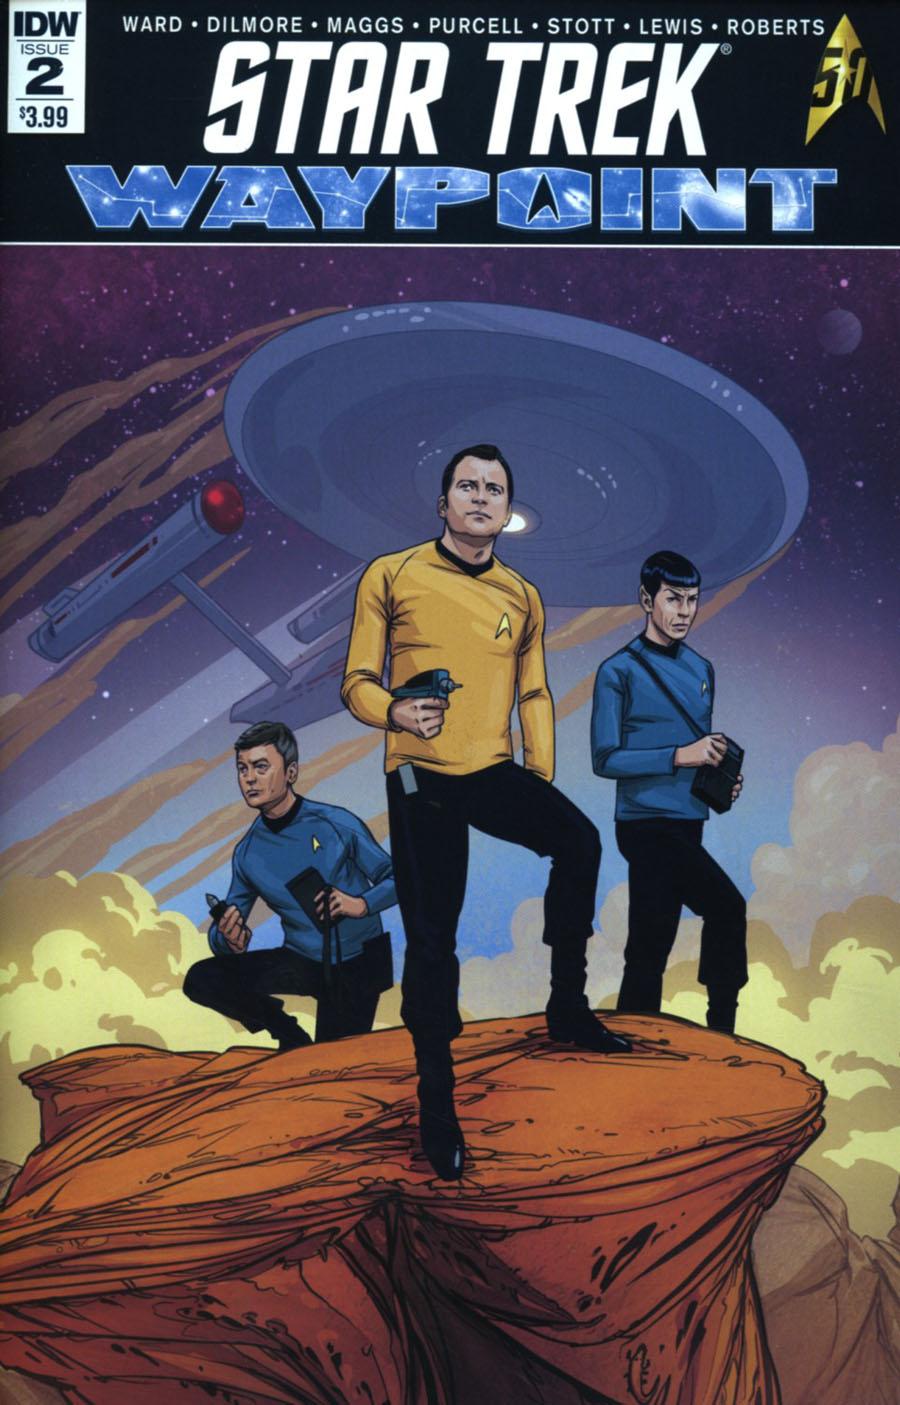 Star Trek Waypoint Vol. 1 #2